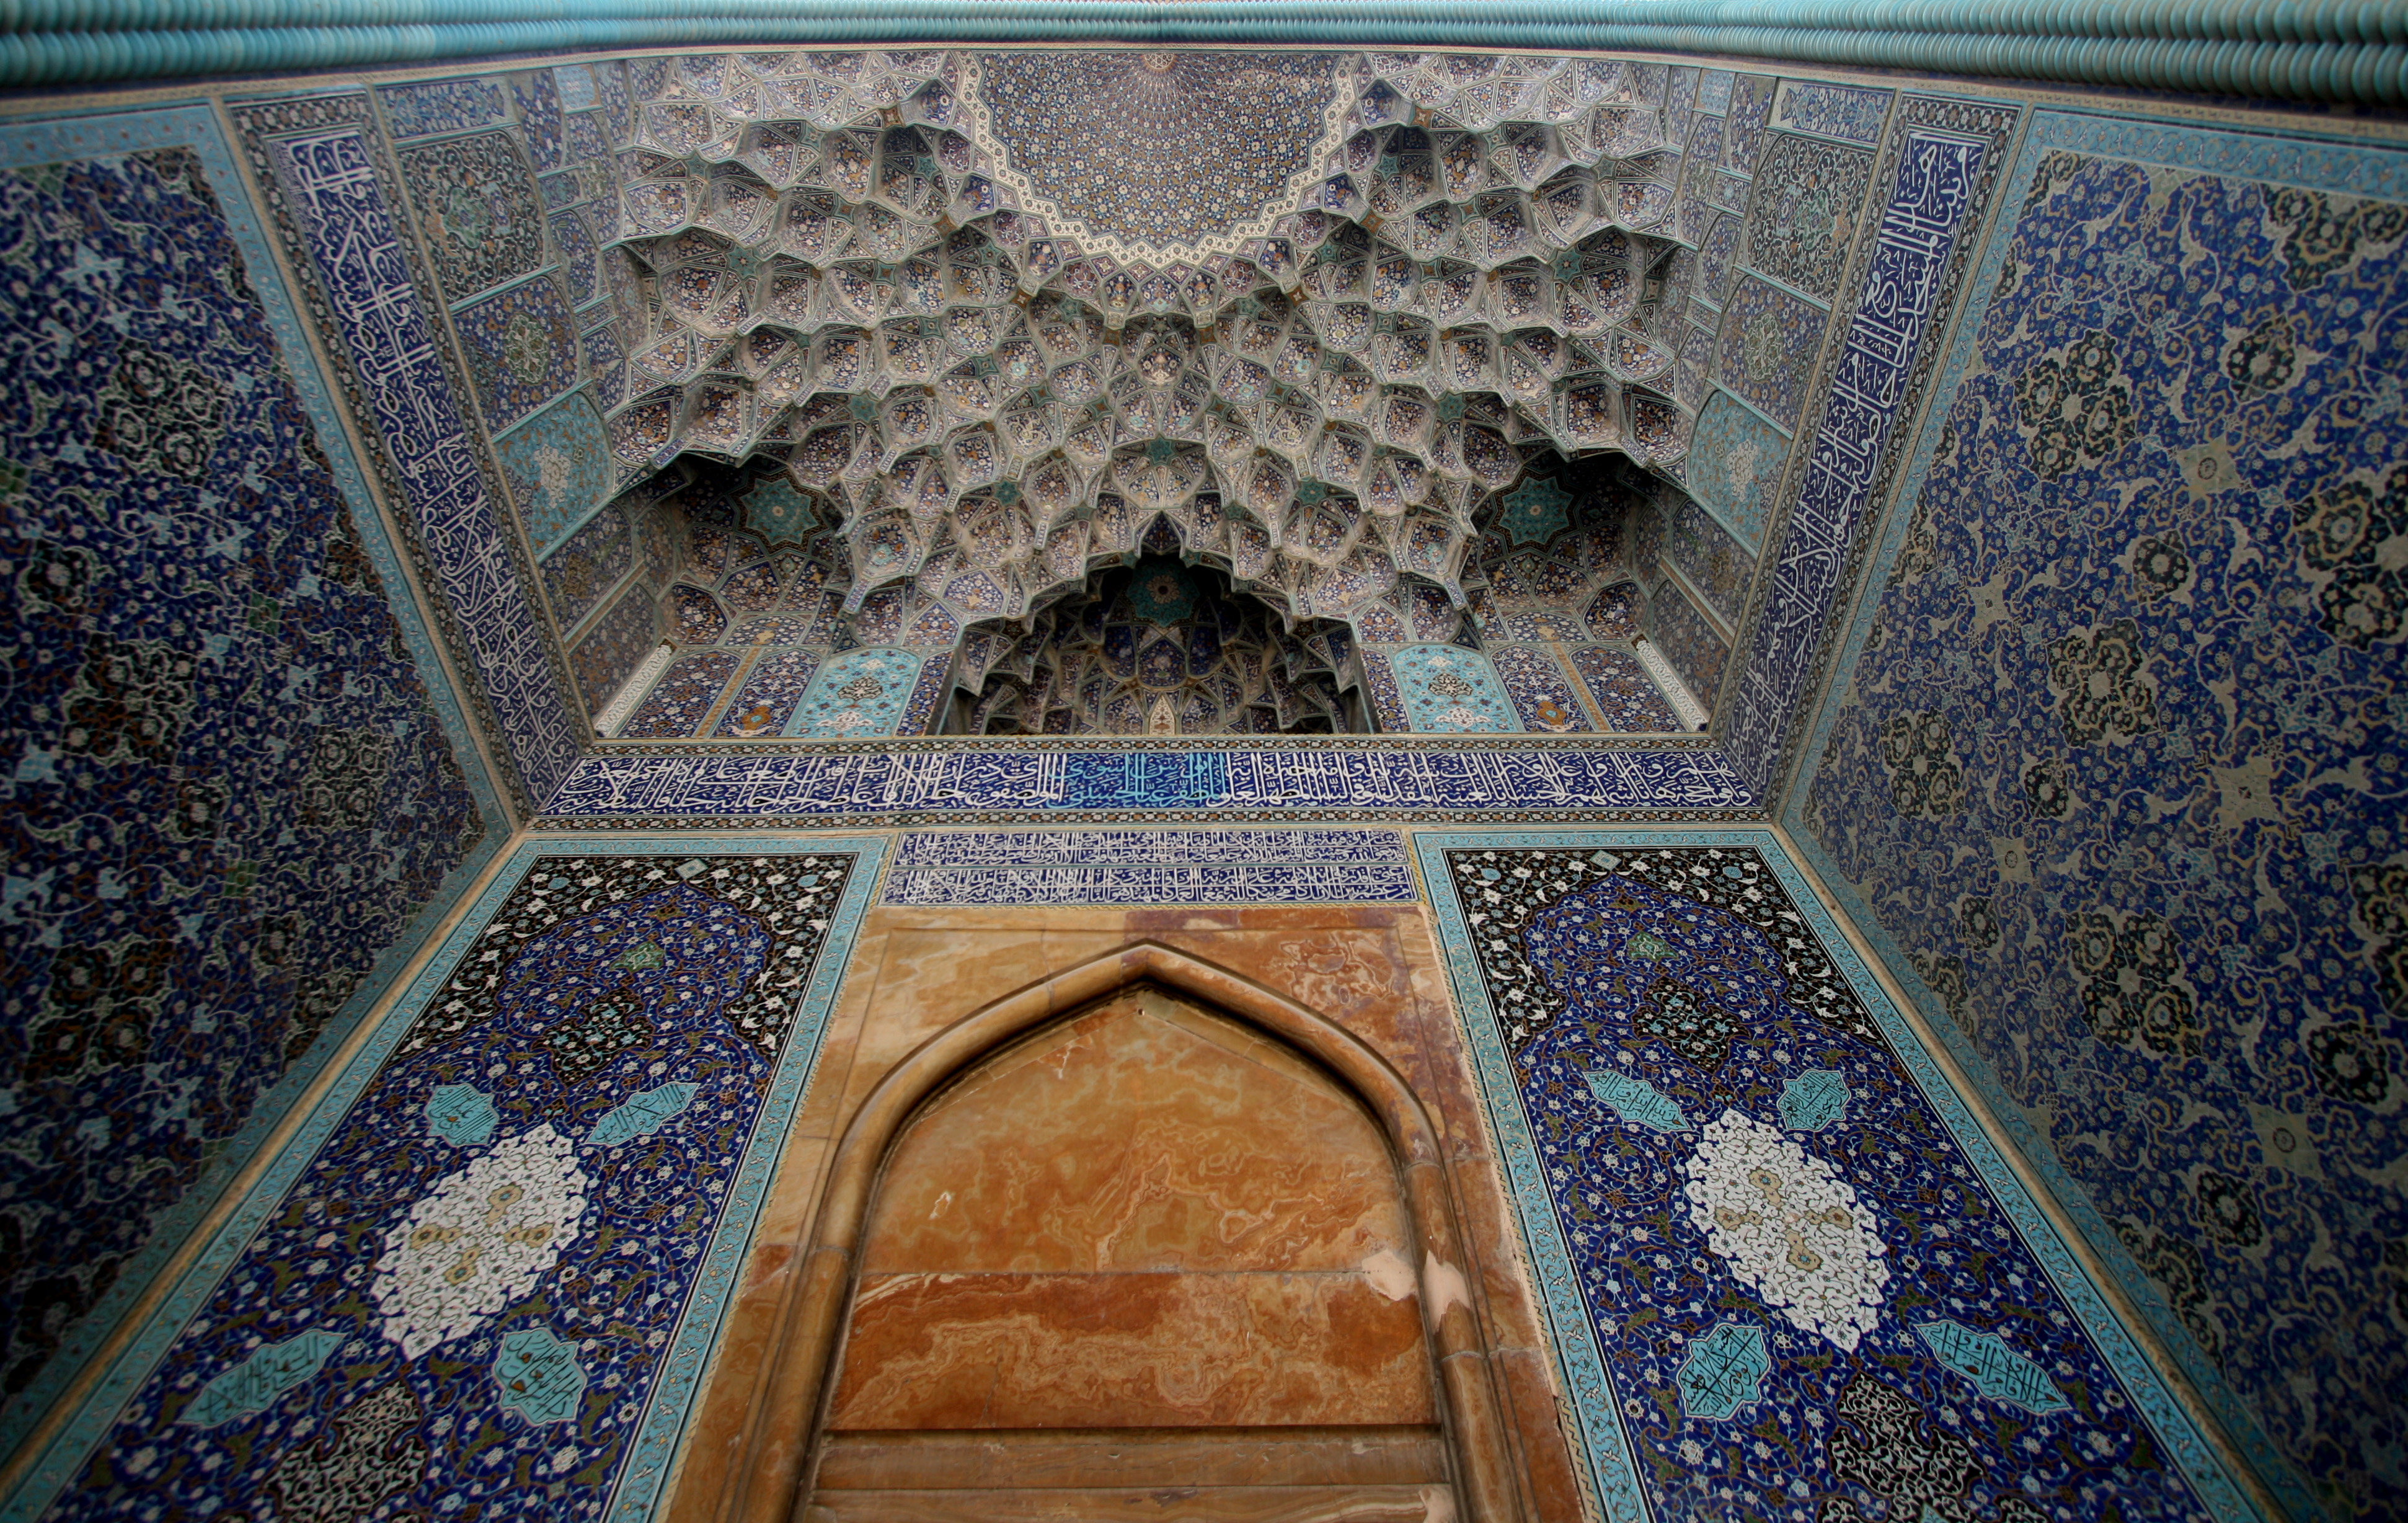 Шахската или Имамската джамия<br />
Най-голямата джамия в Исфахан. Строителството ѝ започнало през 1611 по заповед на шах Абас I Велики и свършило през 1641. Украсена е с уникални картини, мозайки и орнаменти по стените. Общата площ на джамията е 20 000 m2. Височината на минарето е 42 m, а на главния купол - 52 m, което я прави най-високата сграда в Исфахан. Най-голям туристически интерес привлича уникалната акустика на джамията: конструкцията на стените позволява човек да може да слуша шепот на противоположния ъгъл на сградата.